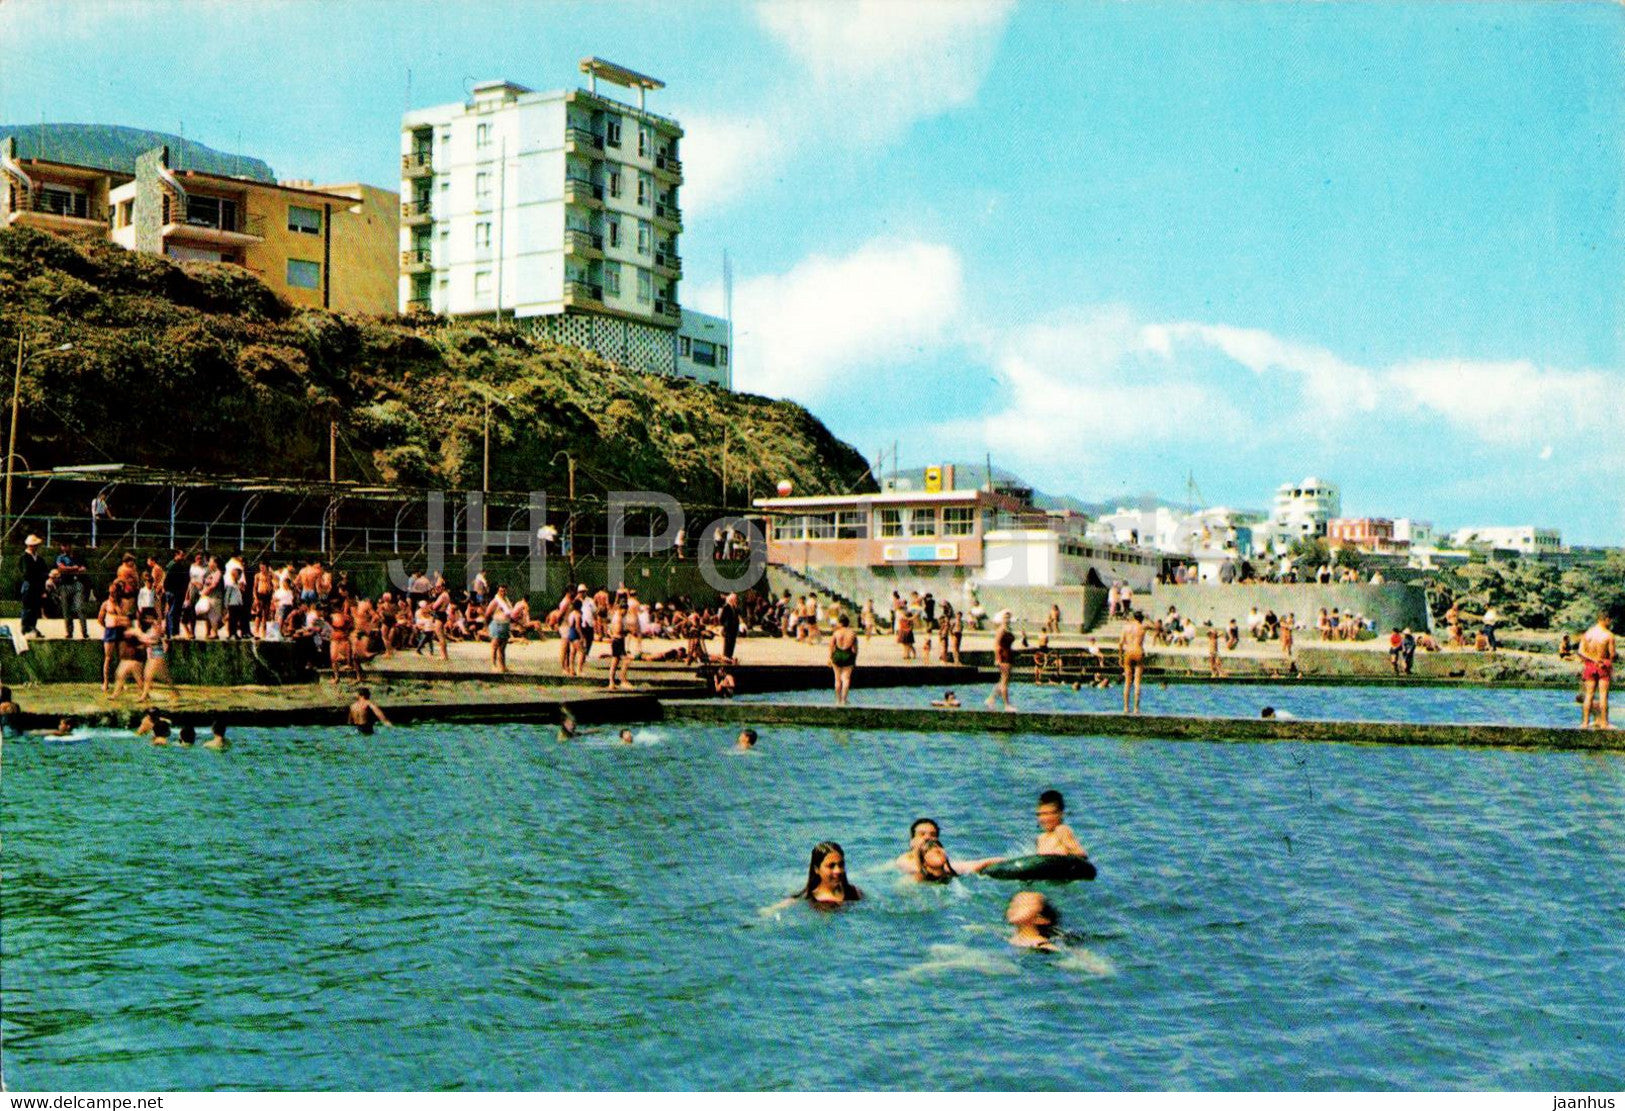 Bajamar - Piscinas y vista parcial - swimminf pool - Tenerife - 2092 - Spain - unused - JH Postcards